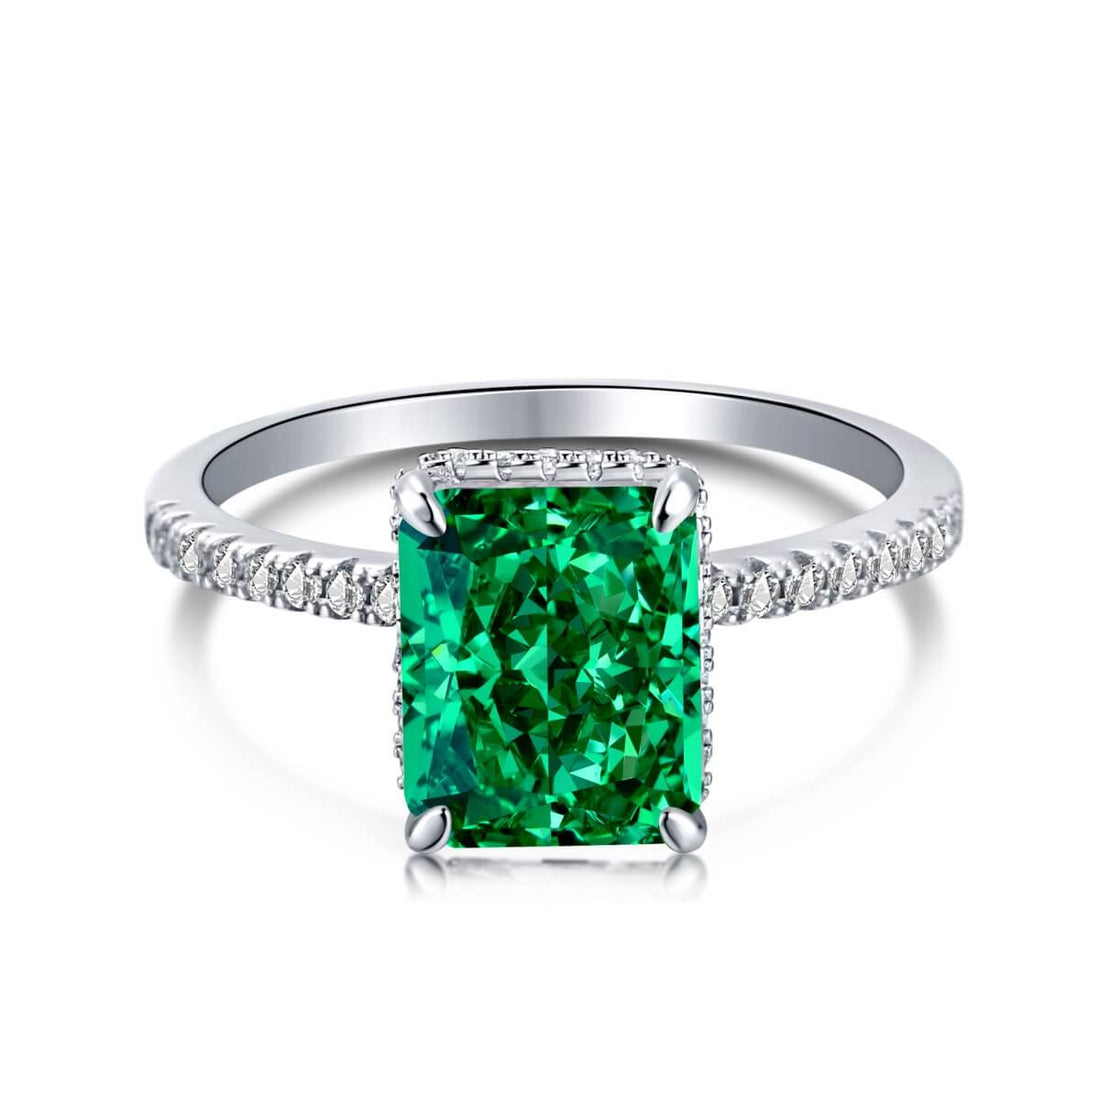 Kemilya Ring- Emerald